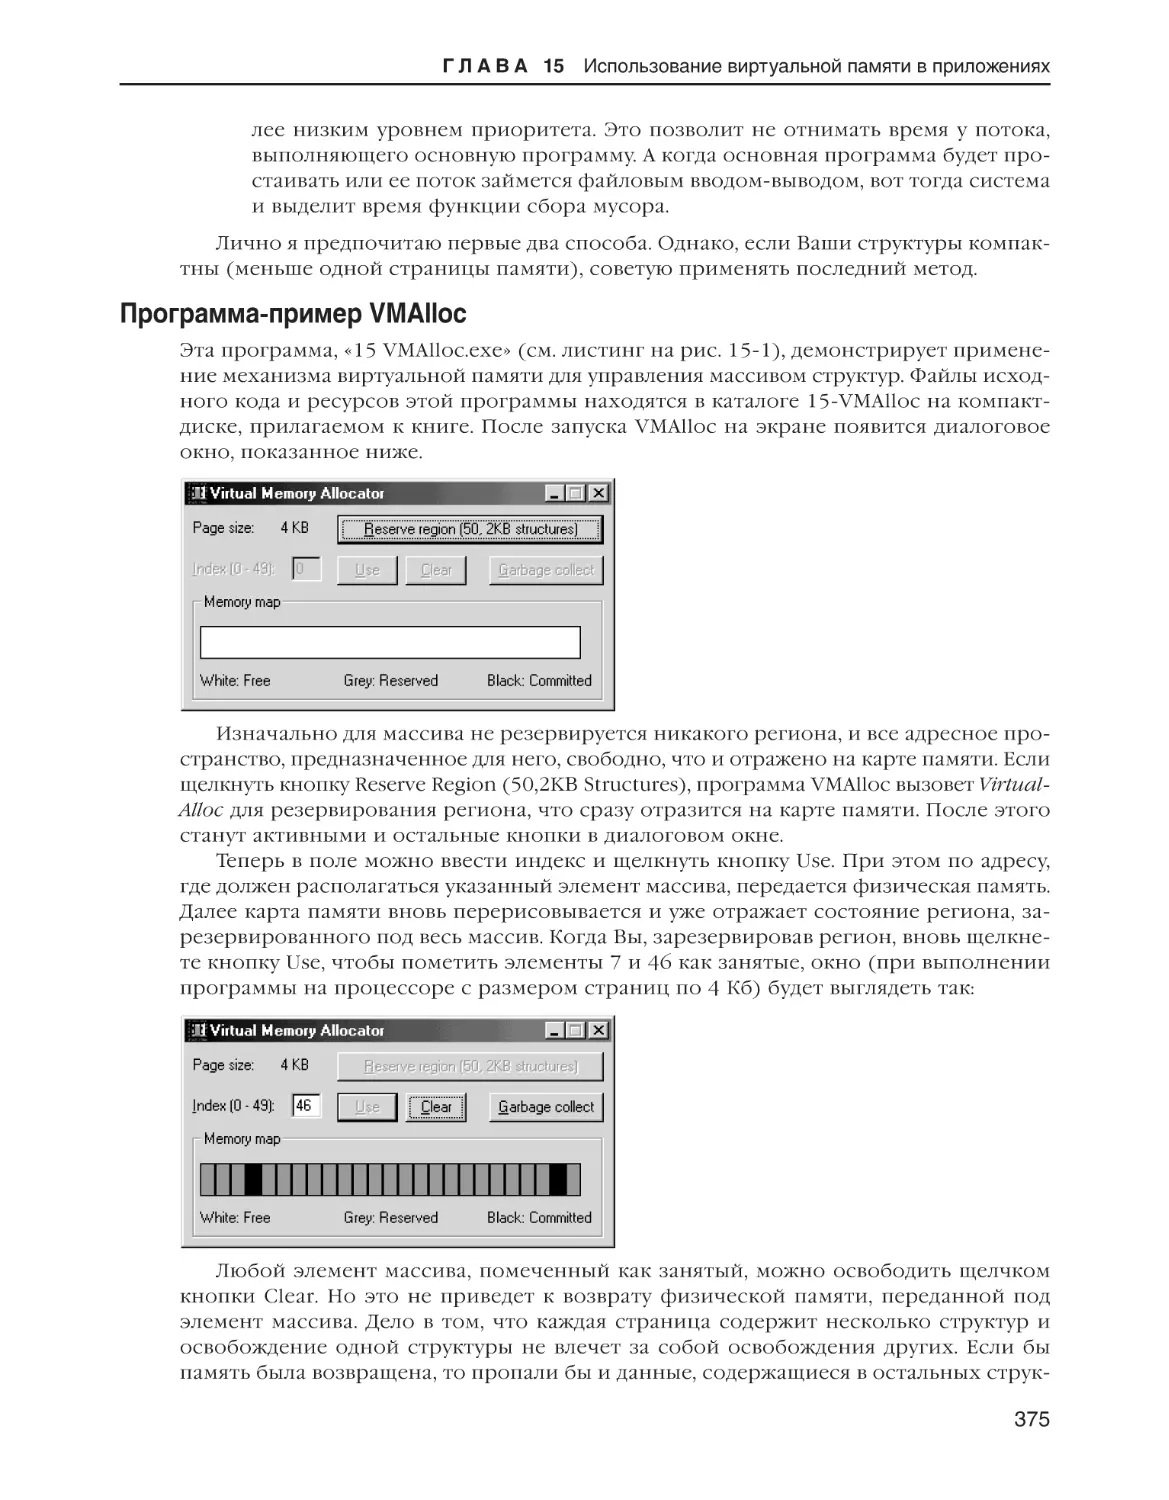 Программа-пример VMAlloc